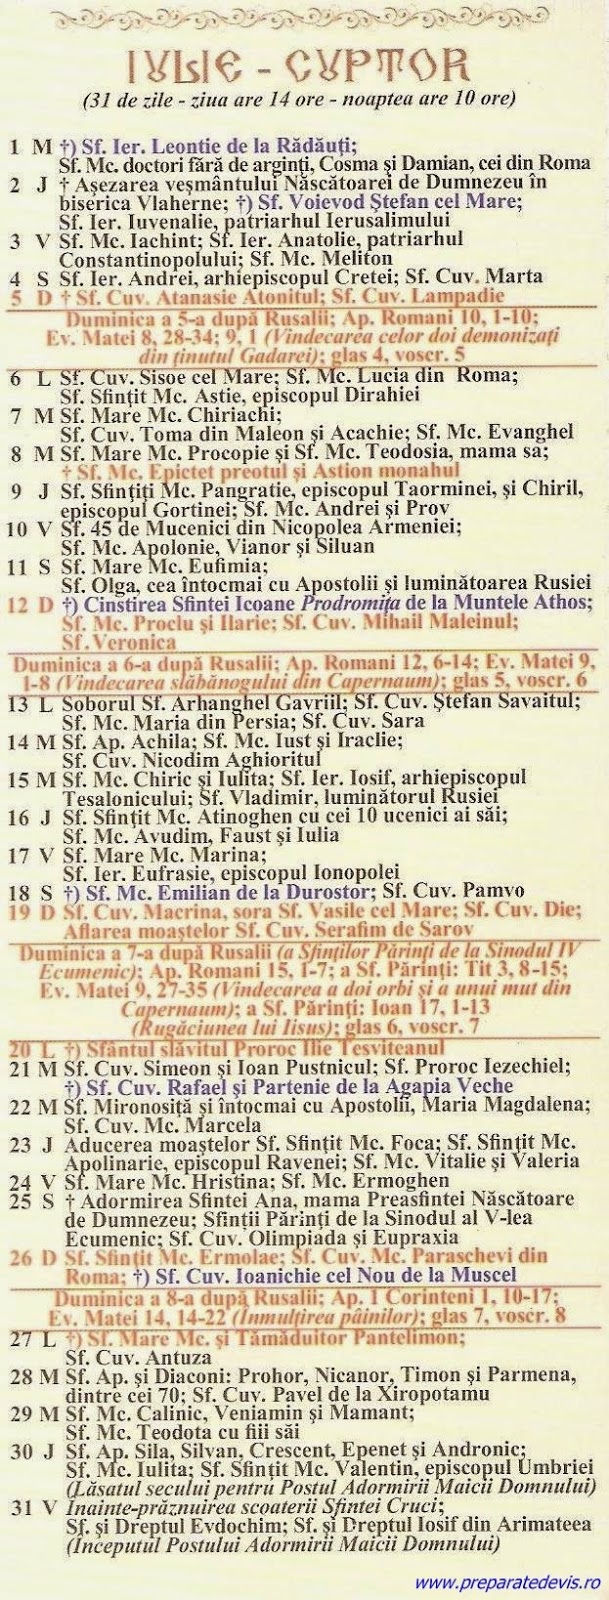 Calendar Ortodox 2021 Iulie / Calendar Ortodox 31 iulie ...